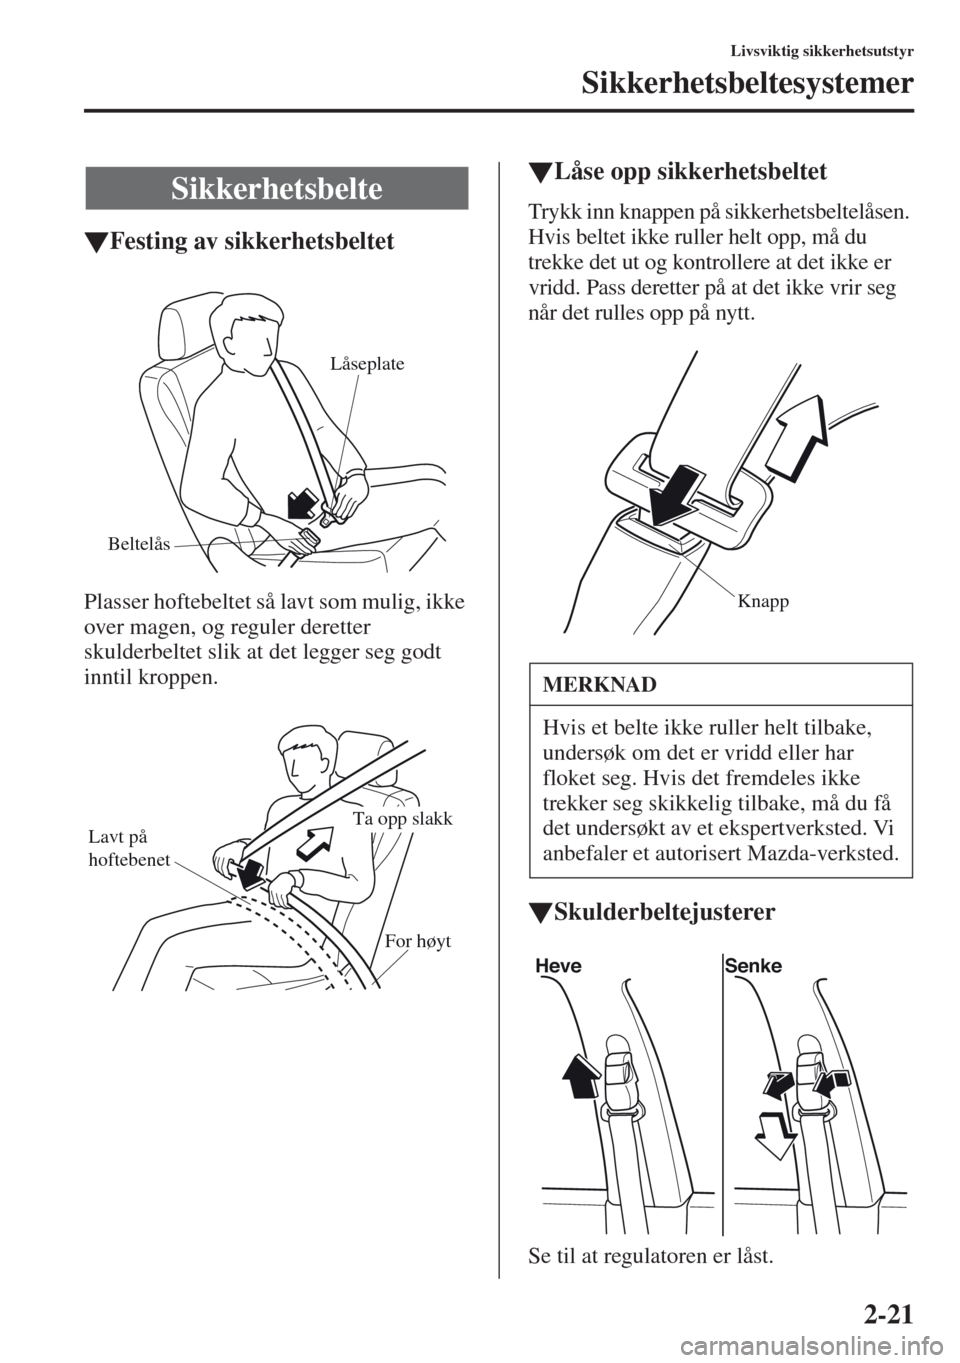 MAZDA MODEL CX-5 2013  Brukerhåndbok (in Norwegian) 2-21
Livsviktig sikkerhetsutstyr
Sikkerhetsbeltesystemer
tFesting av sikkerhetsbeltet
Plasser hoftebeltet så lavt som mulig, ikke 
over magen, og reguler deretter 
skulderbeltet slik at det legger se